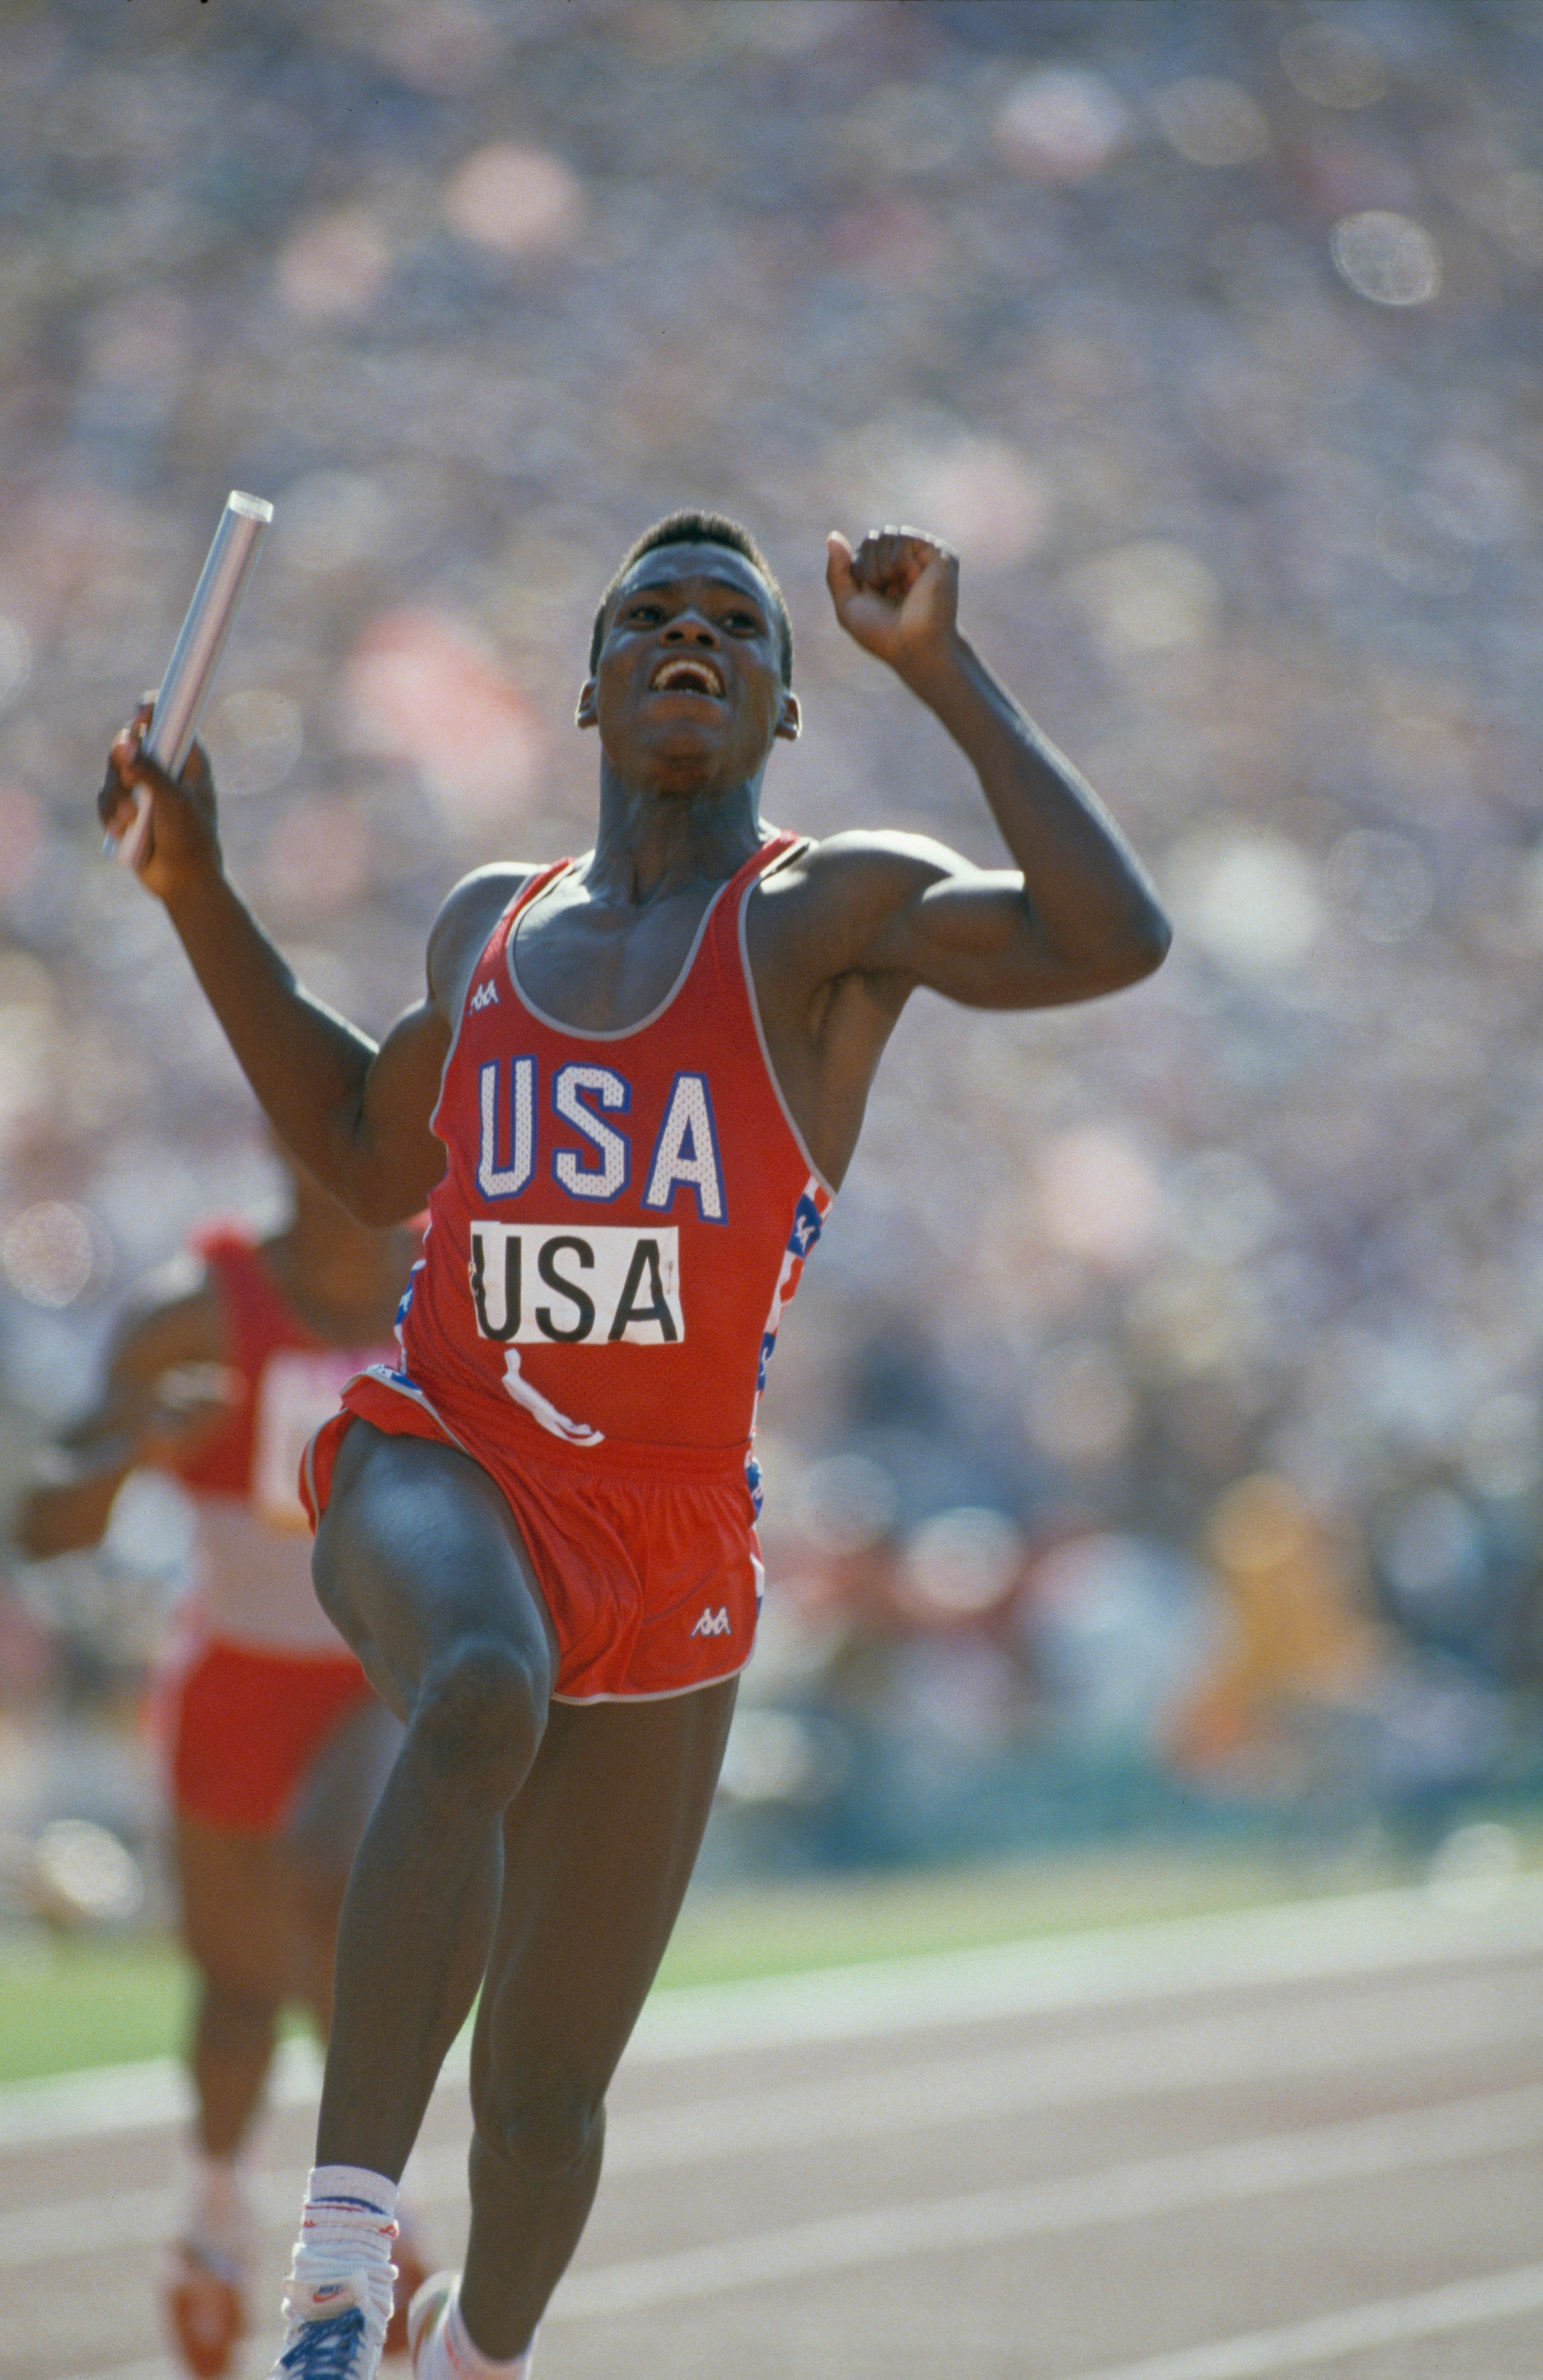 Il giovane atleta americano Carl Lewis, soprannominato "figlio del vento", durante la finale della staffetta 4x100 metri piani. Vincerà 4 medaglie d'oro (100, 200, lungo e staffetta) eguagliando il record di Jesse Owens